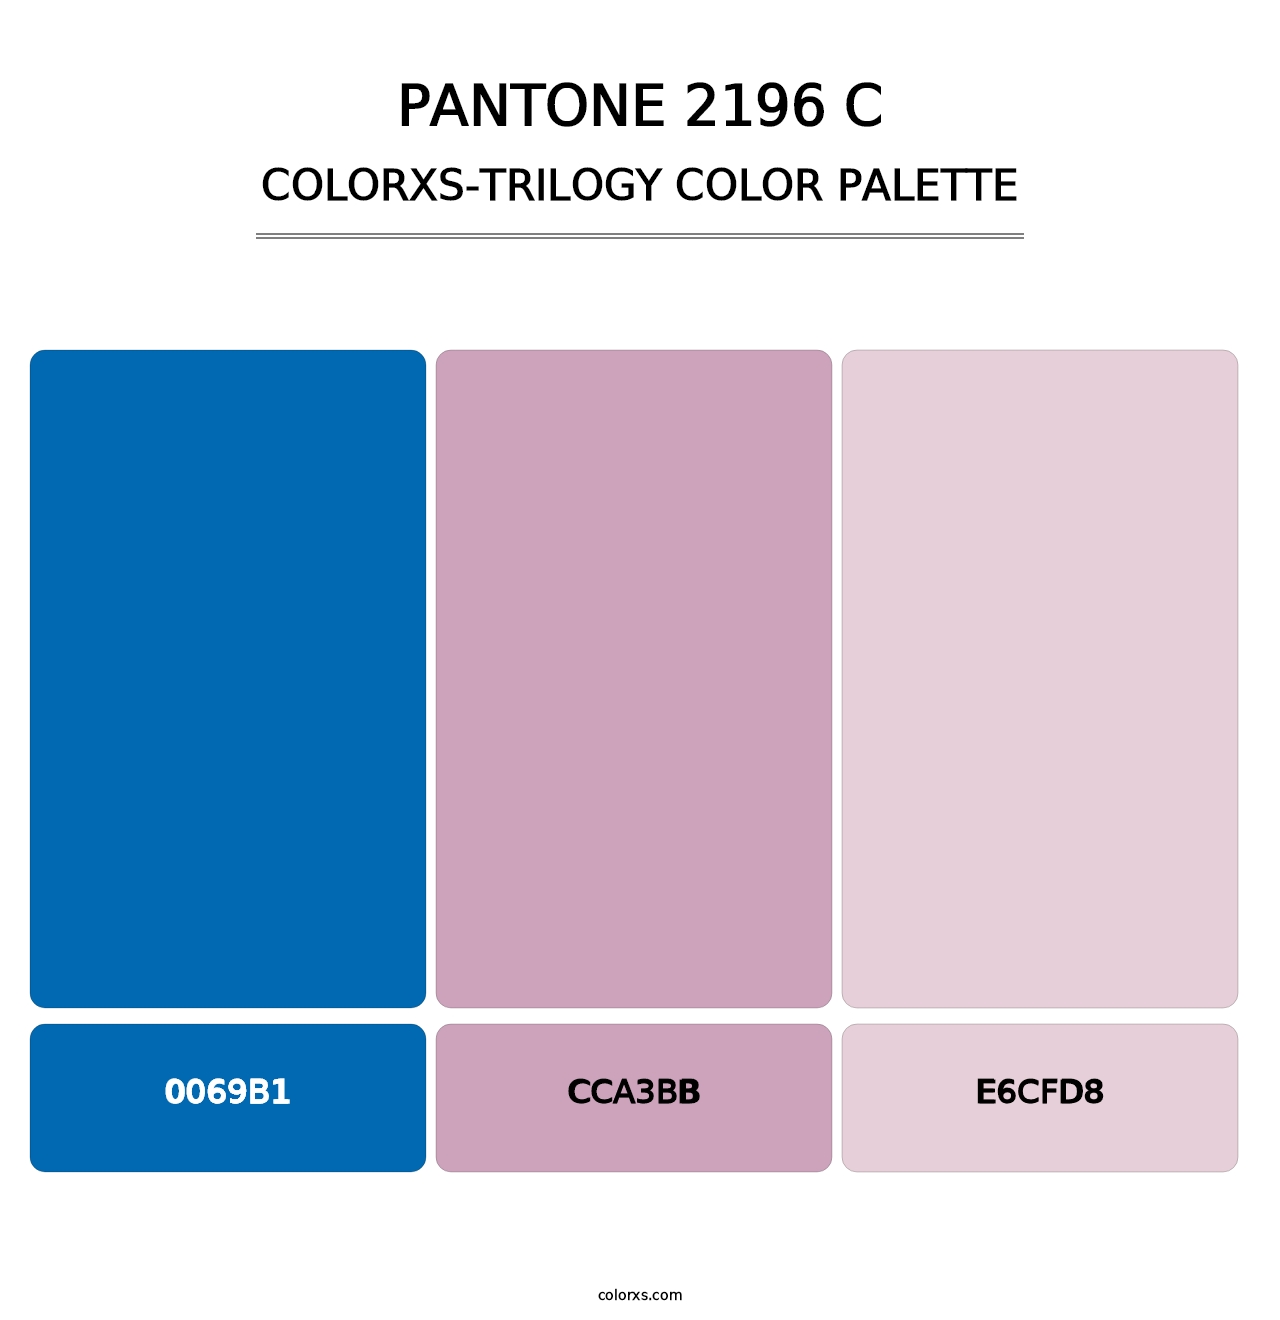 PANTONE 2196 C - Colorxs Trilogy Palette